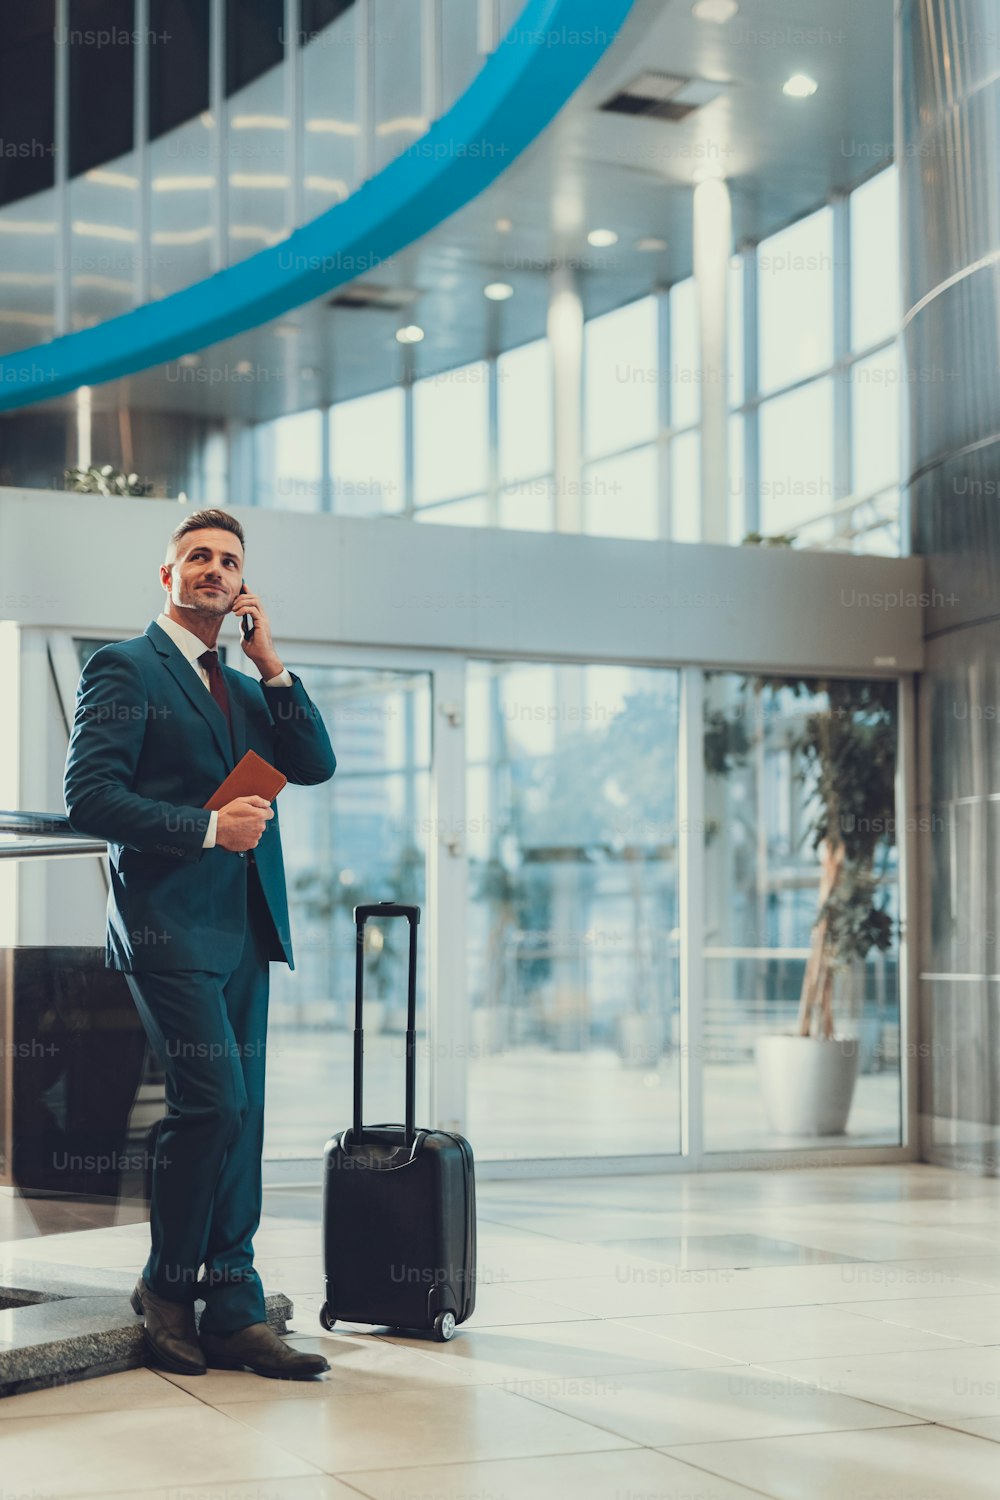 Photo verticale d’un homme adulte attrayant dans un costume élégant debout près de la valise et attendant son vol. Il leva les yeux et parla sur son cellulaire